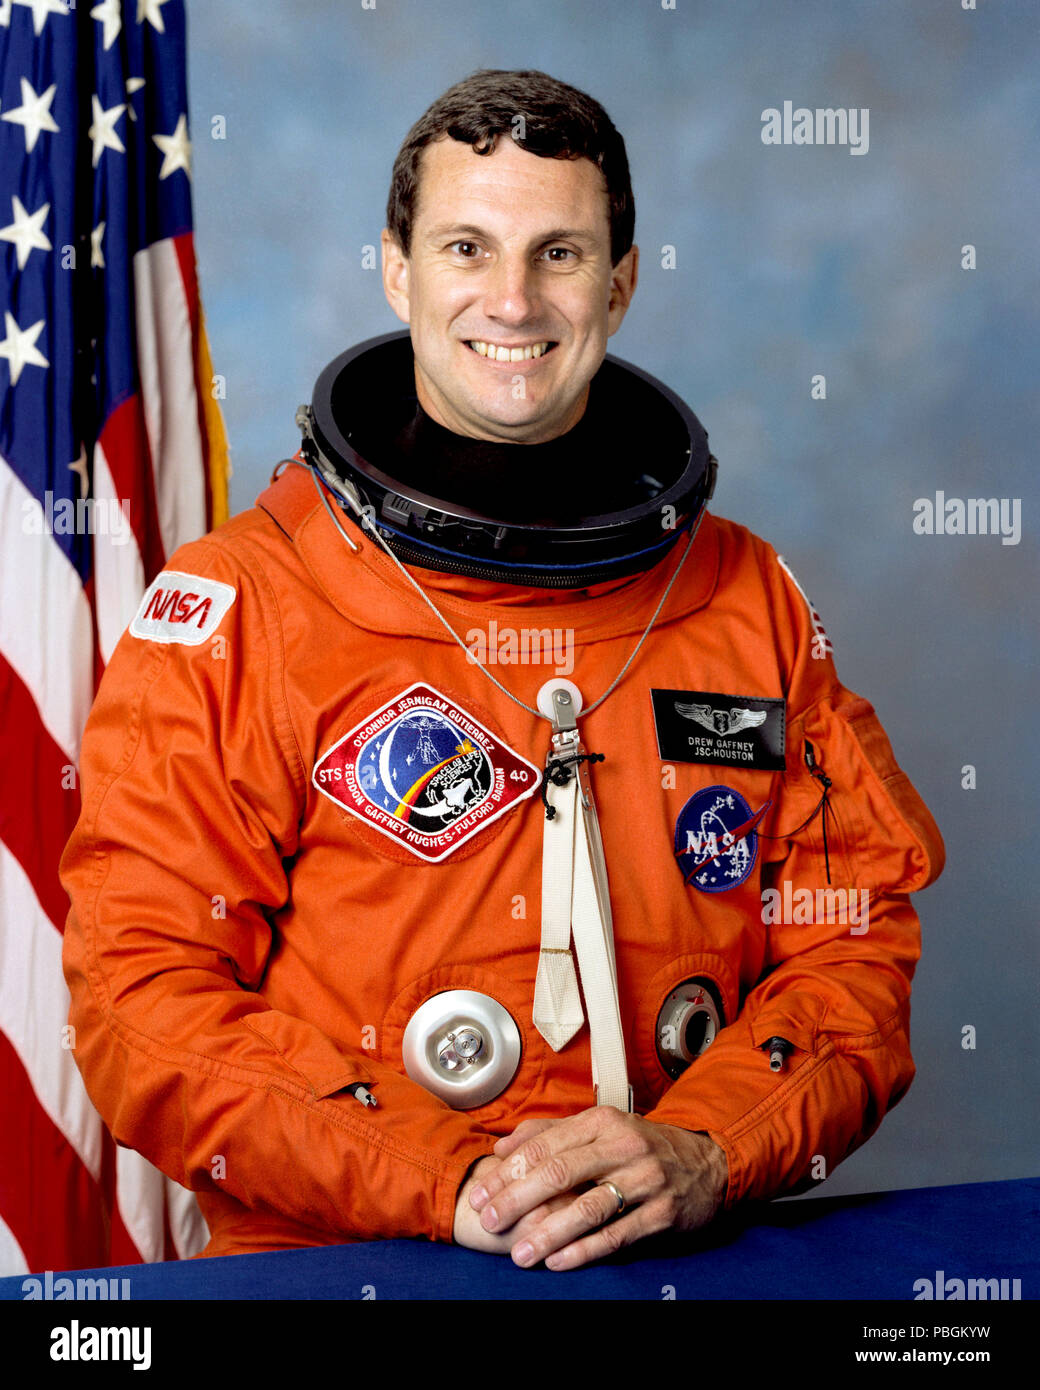 Als Nutzlastspezialist am Juni 1991 STS-40 Spacelab Life Sciences mission SLS (1), den ersten Shuttle Mission zur biomedizinischen Forschung widmet. Stockfoto